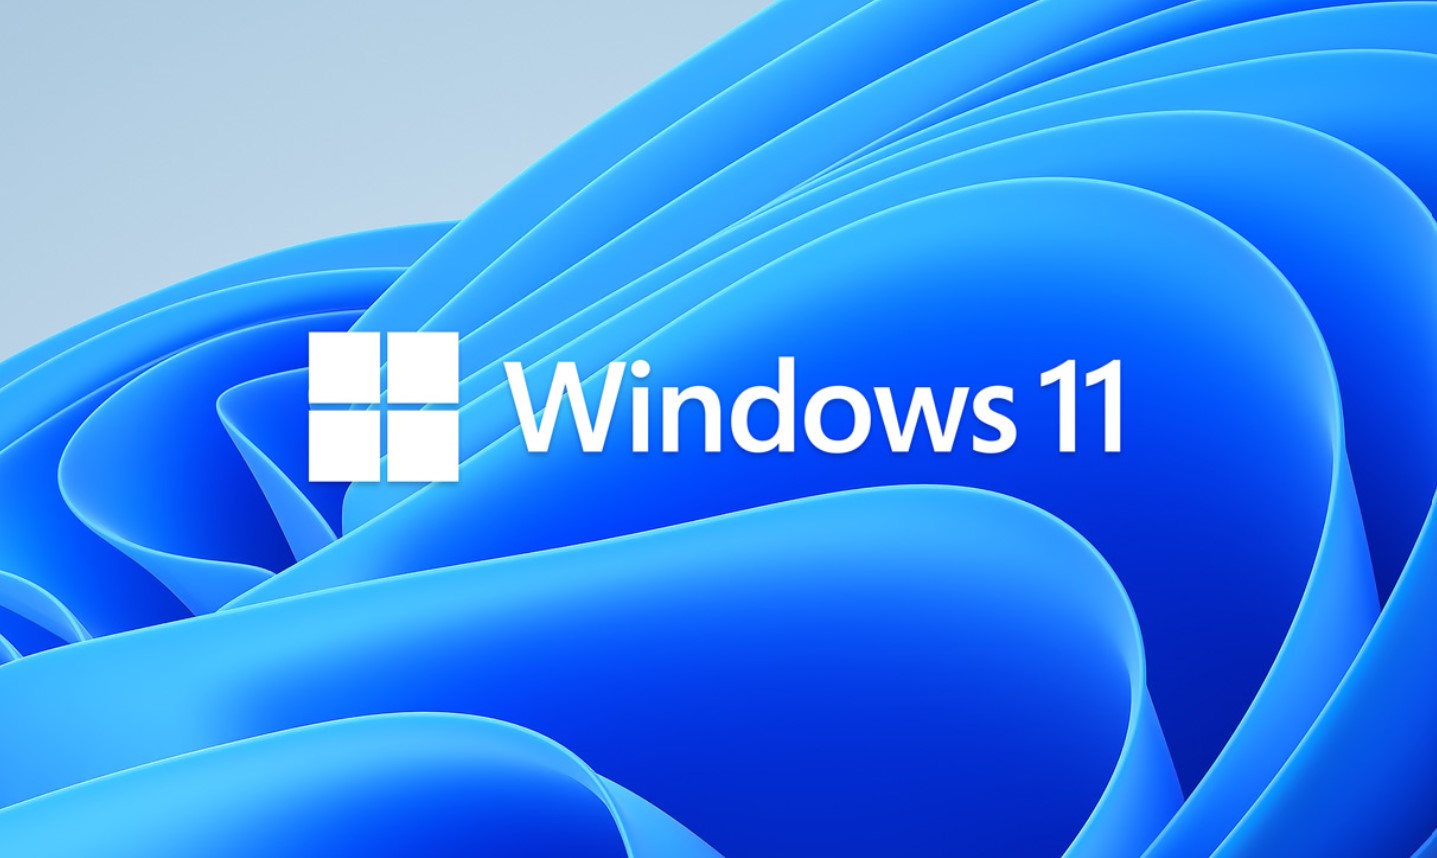 Zu sehen ist eine grafische Darstellung mit dem Schriftzug Windows 11. Bild: Microsoft